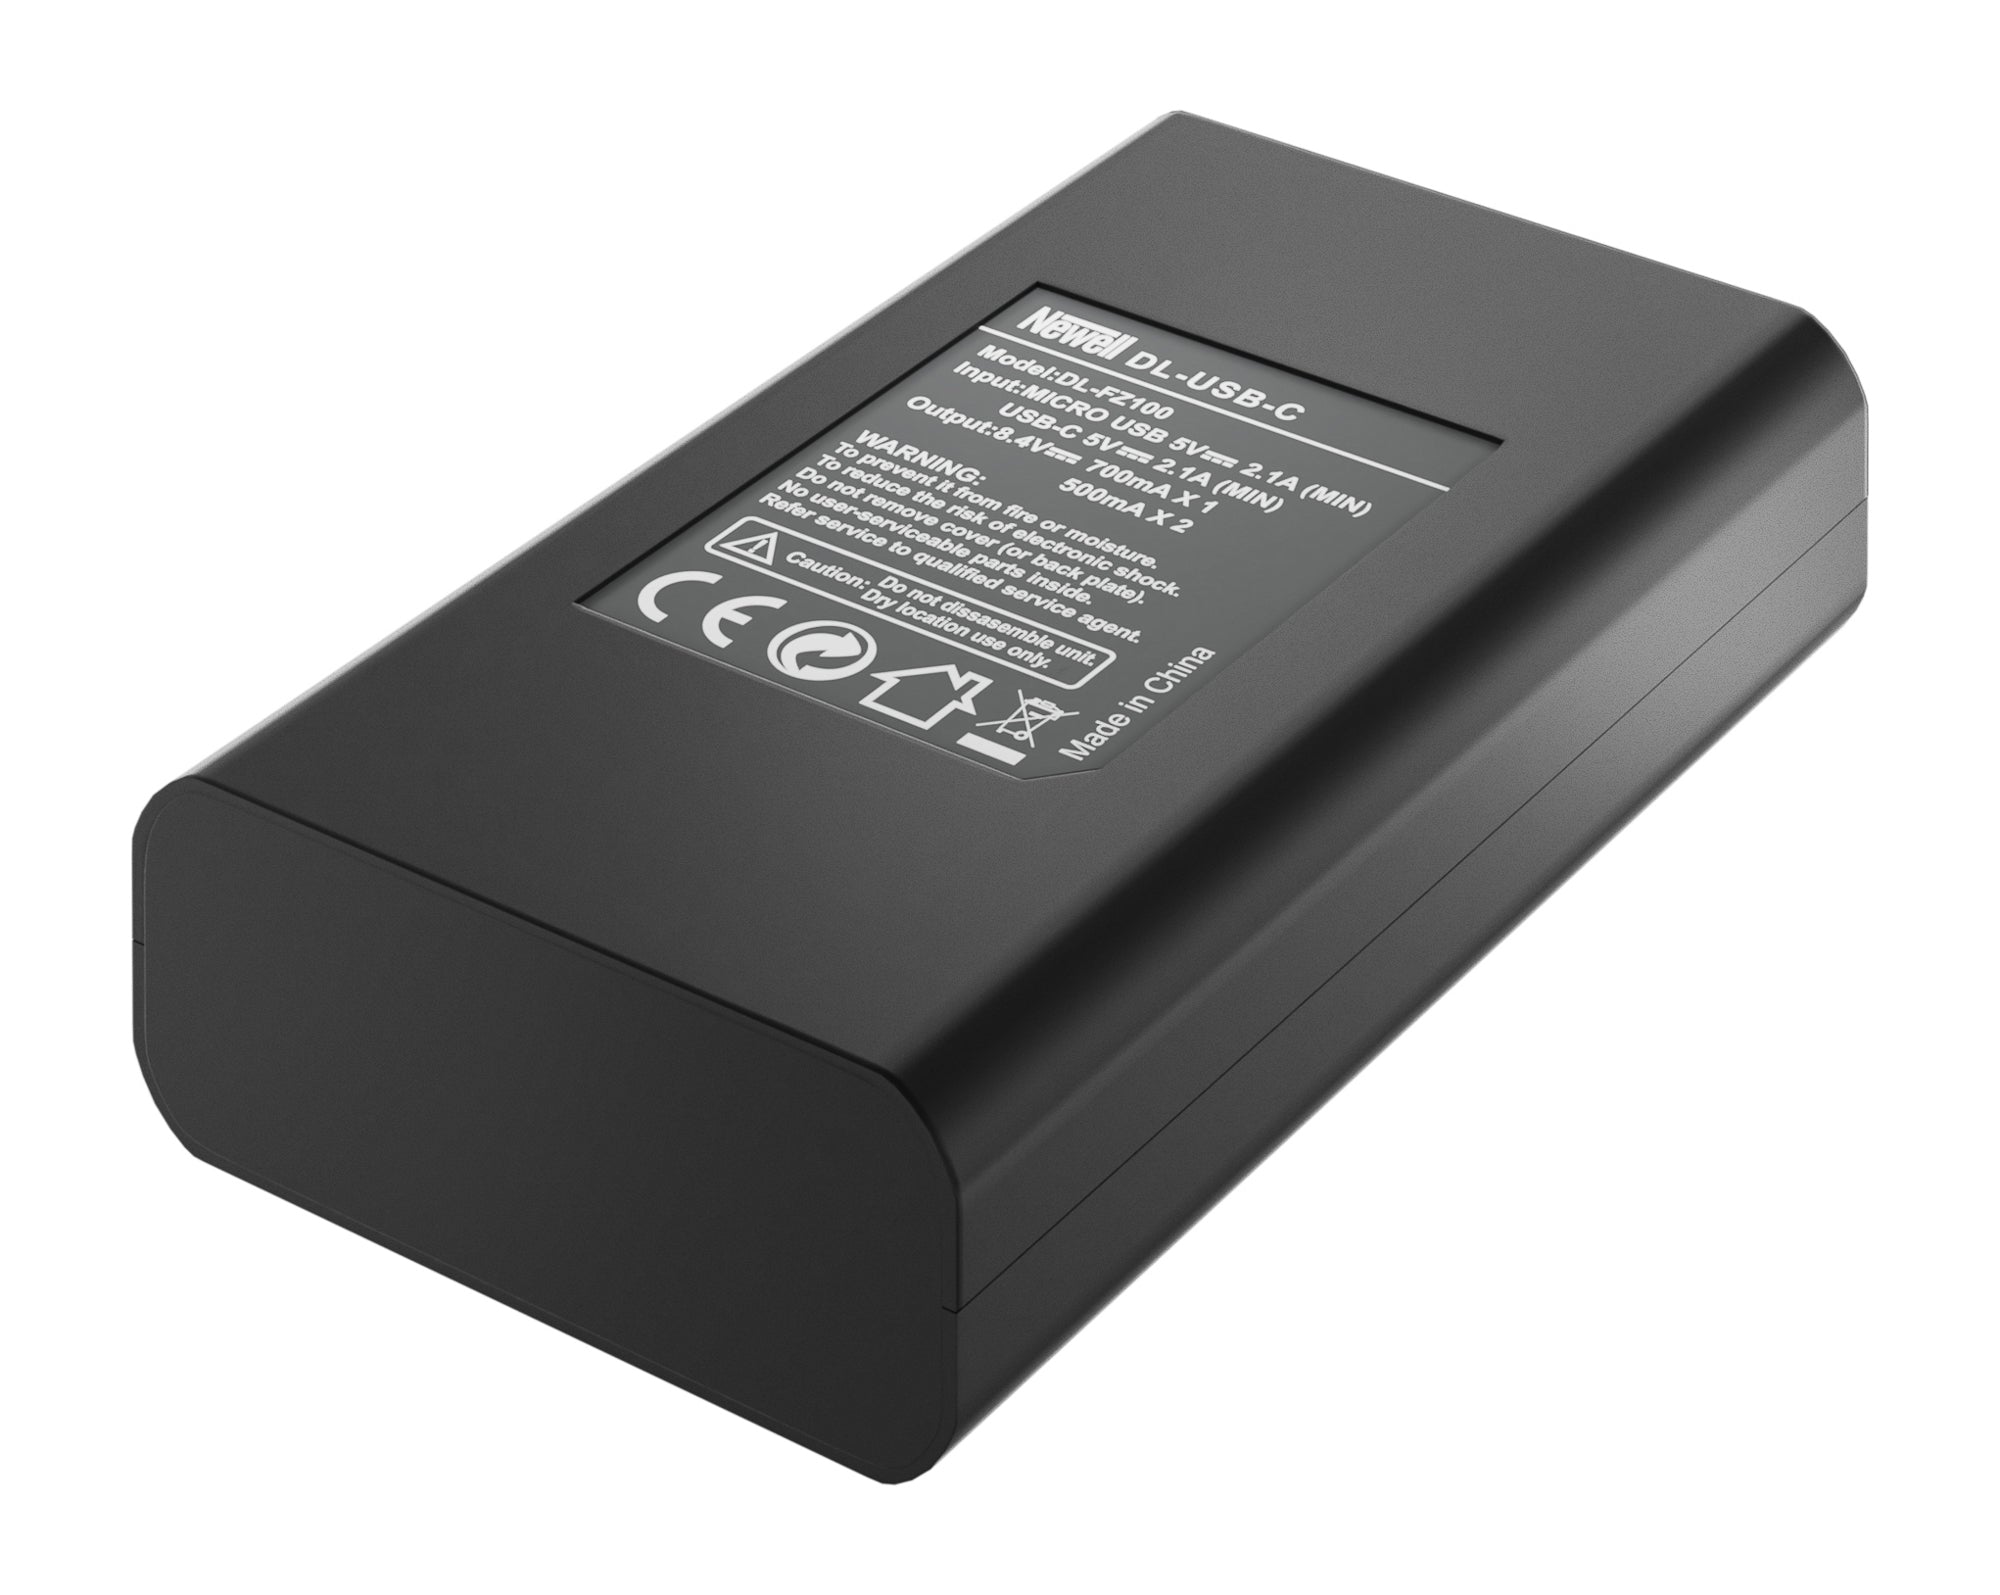 Chargeur Newell DL-USB-C et 1x batterie NP-FZ100 pour Sony